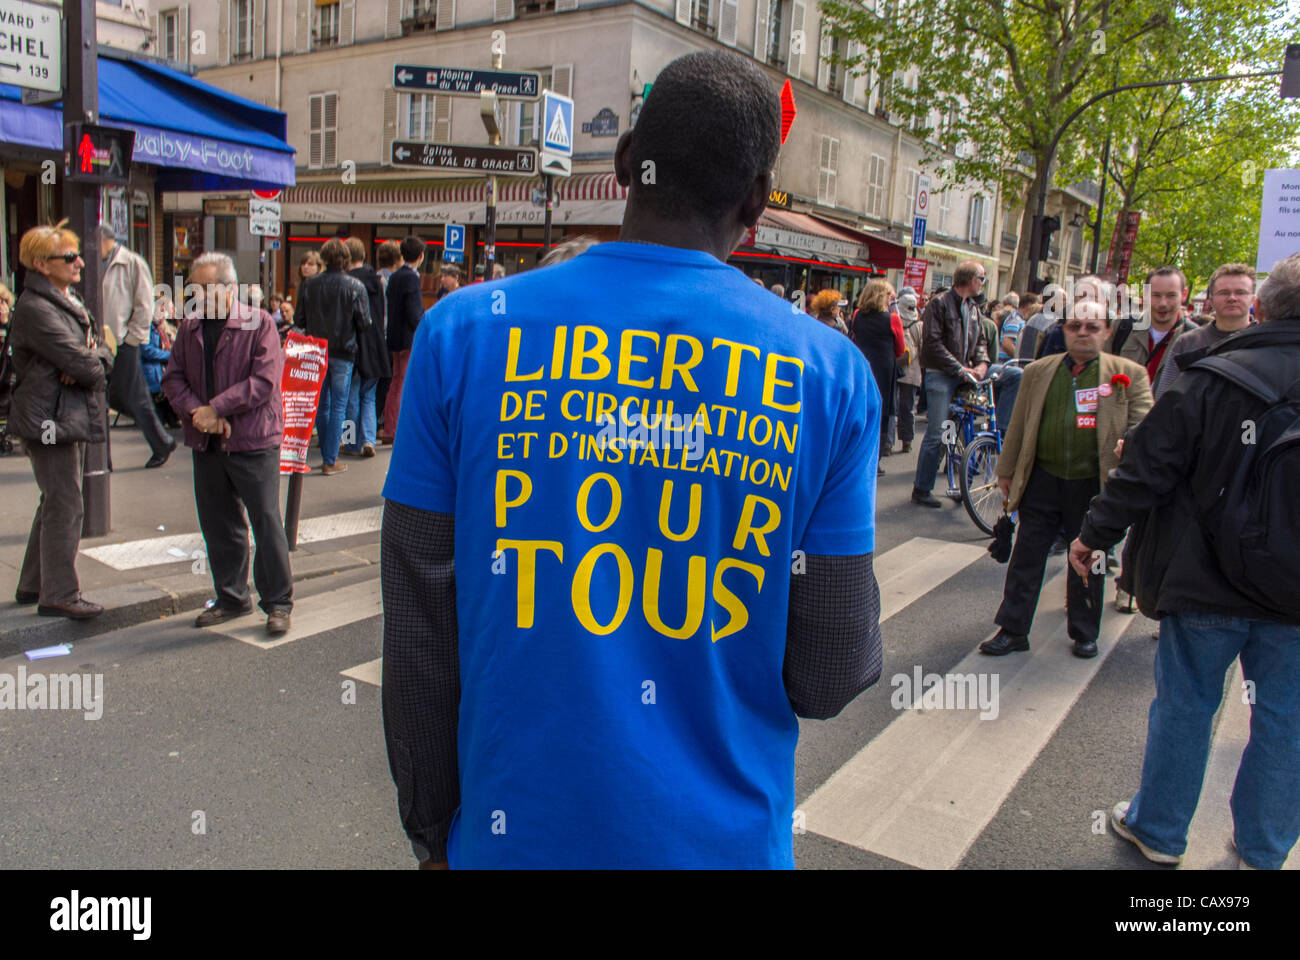 Paris, France, les syndicats français manifestent en mars du jour de mai, manifestation internationale des immigrants africains, manifestations dans la rue, t-shirt slogan, migrants européens, manifestants droits humains multiraciaux Banque D'Images